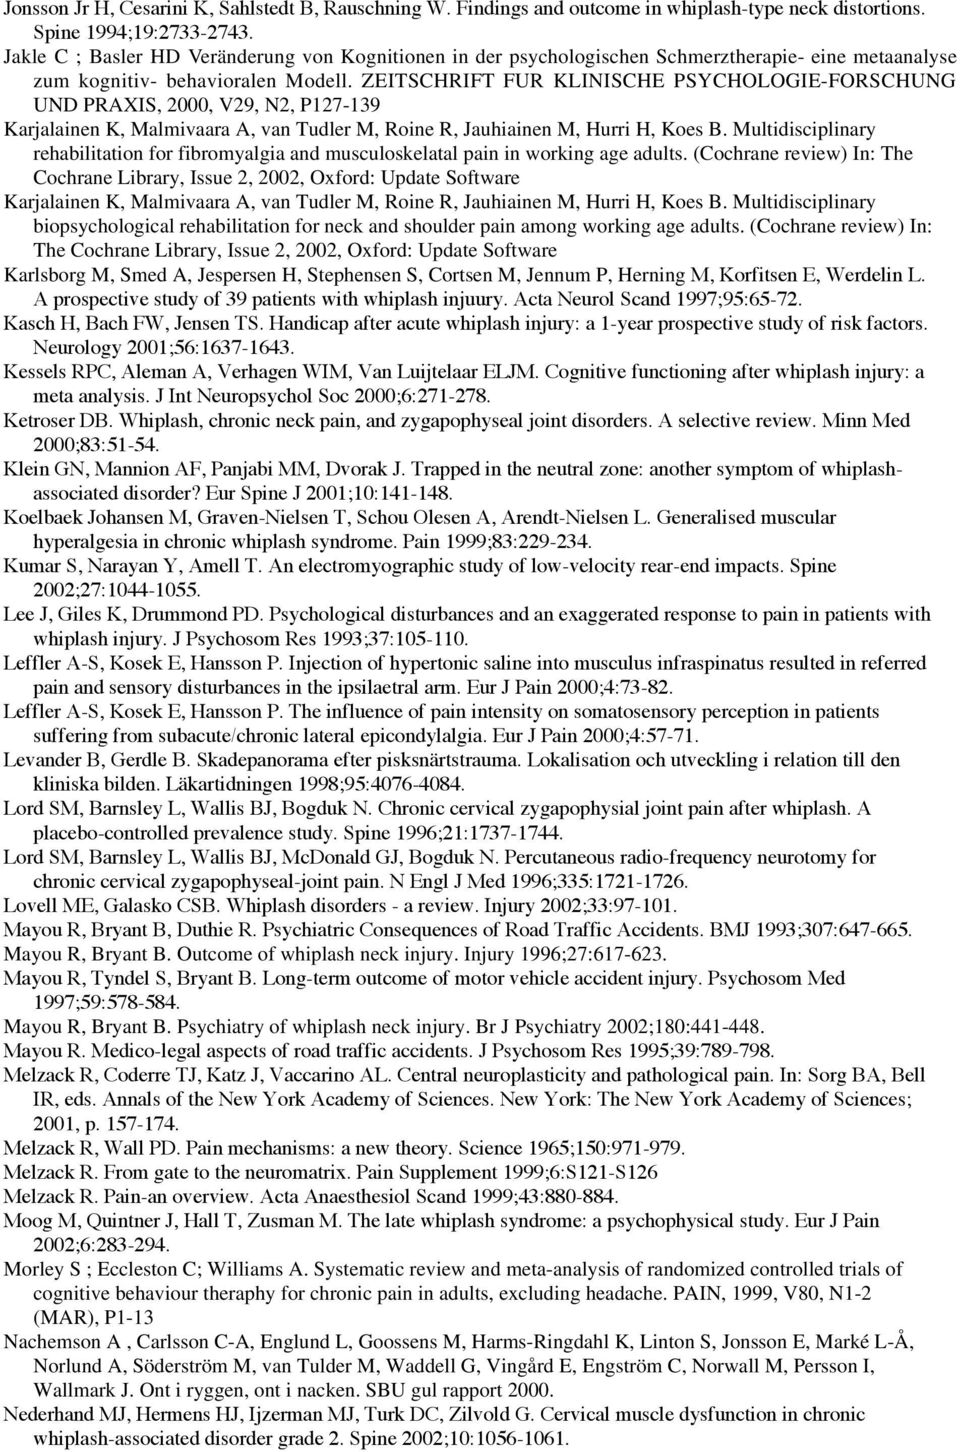 ZEITSCHRIFT FUR KLINISCHE PSYCHOLOGIE-FORSCHUNG UND PRAXIS, 2000, V29, N2, P127-139 Karjalainen K, Malmivaara A, van Tudler M, Roine R, Jauhiainen M, Hurri H, Koes B.